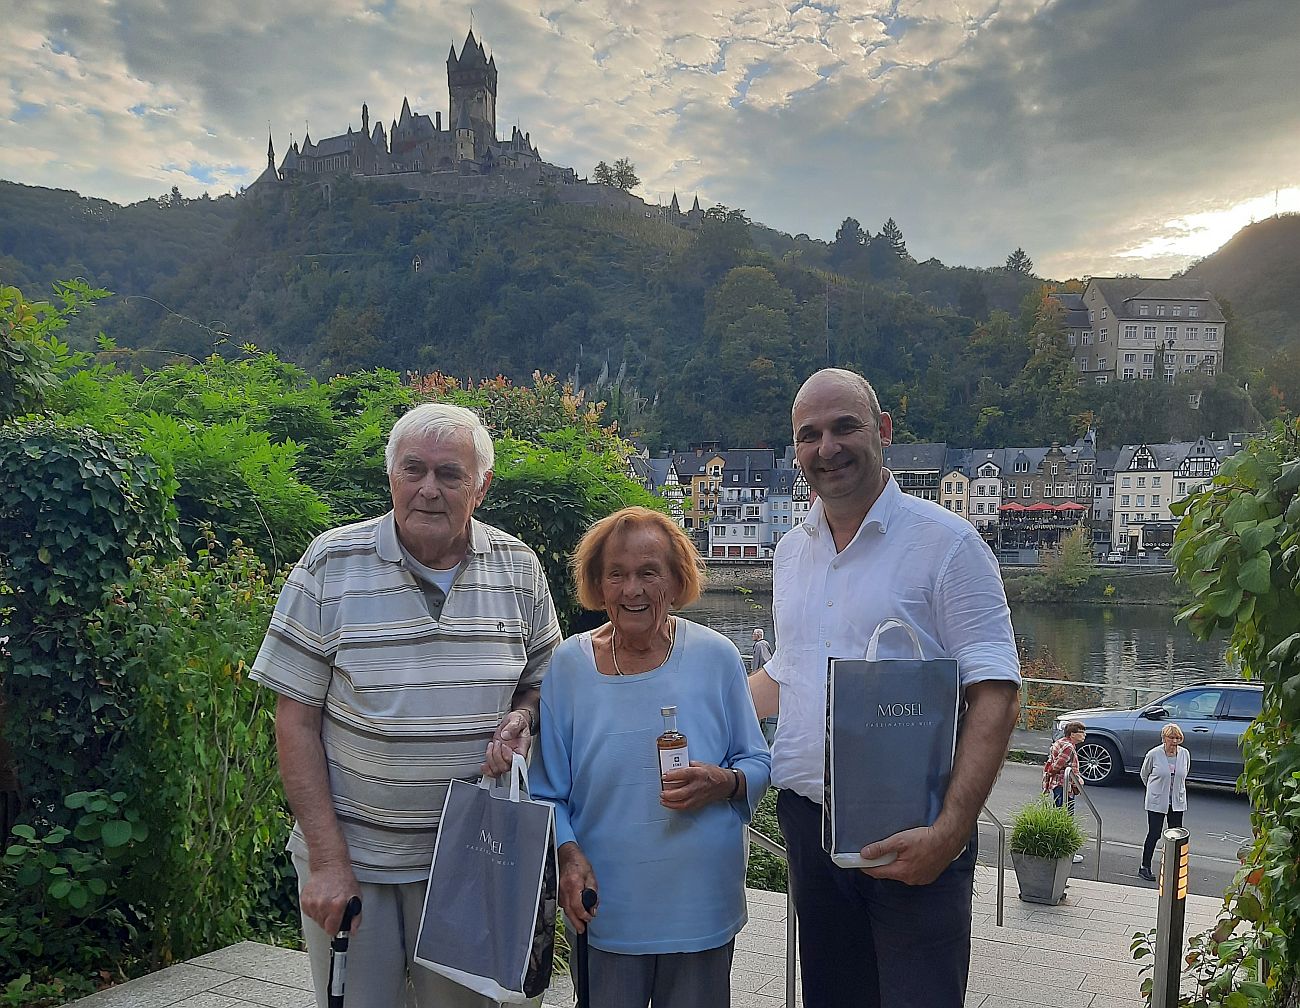 70 Senioren aus Oberzissen waren auf Moseltour Ältesten Teilnehmer 96 und 90 Jahre